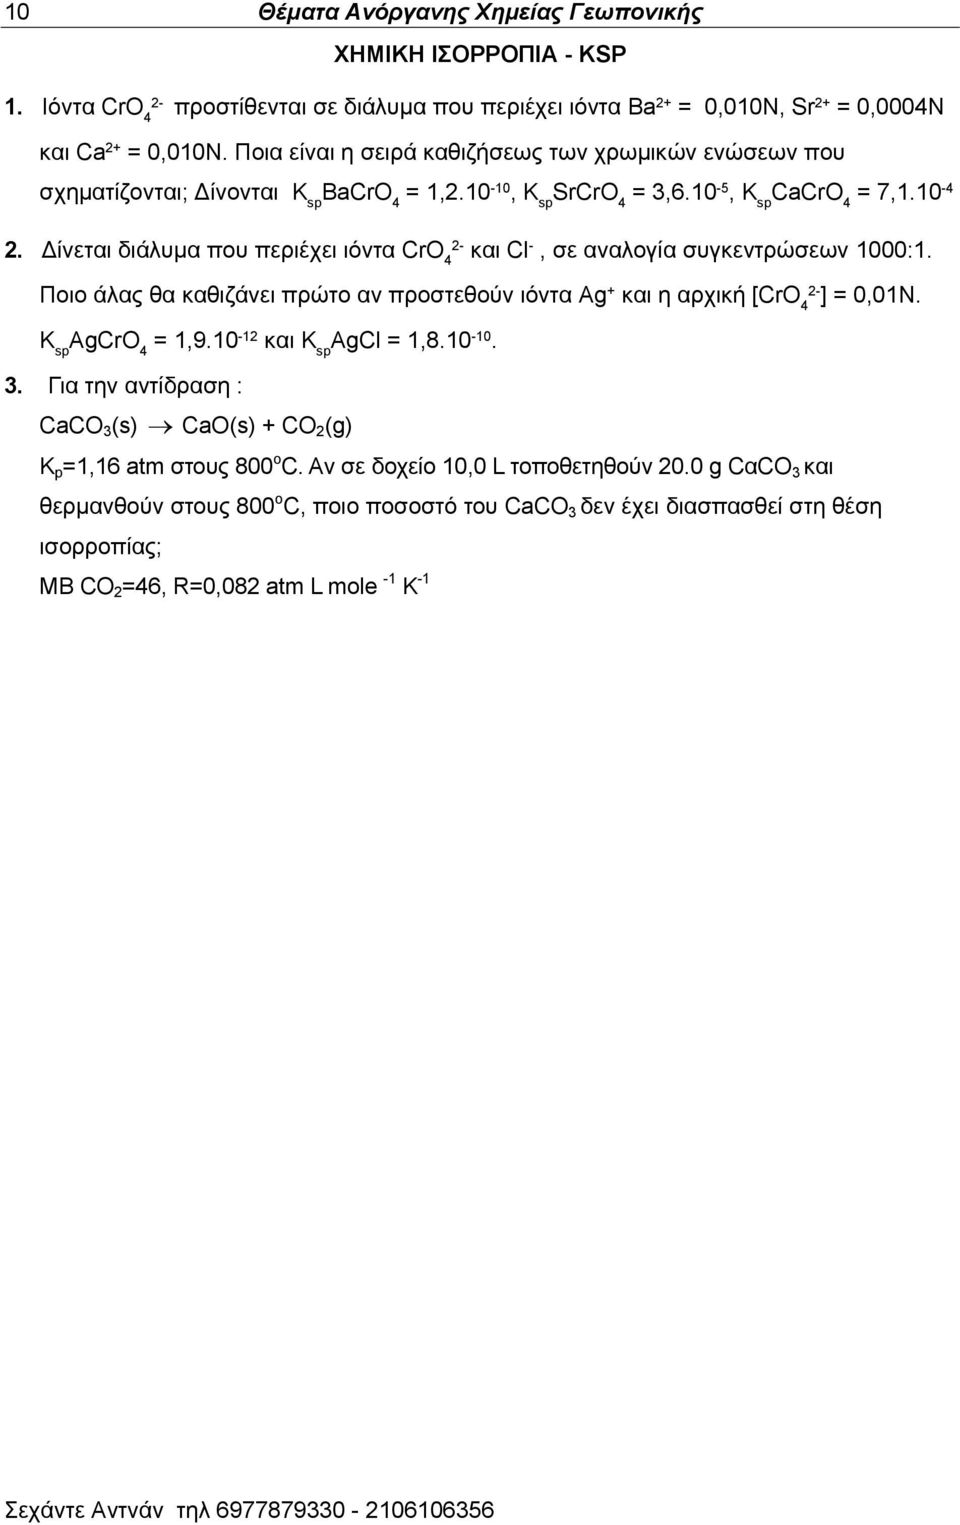 Γίκεηαζ δζάθοια πμο πενζέπεζ ζυκηα CrO 4 ηαζ Cl -, ζε ακαθμβία ζοβηεκηνχζεςκ 1000:1. Πμζμ άθαξ εα ηαεζγάκεζ πνχημ ακ πνμζηεεμφκ ζυκηα Ag + 2- ηαζ δ ανπζηή [CrO 4 ] = 0,01Ν. K sp AgCrO 4 = 1,9.